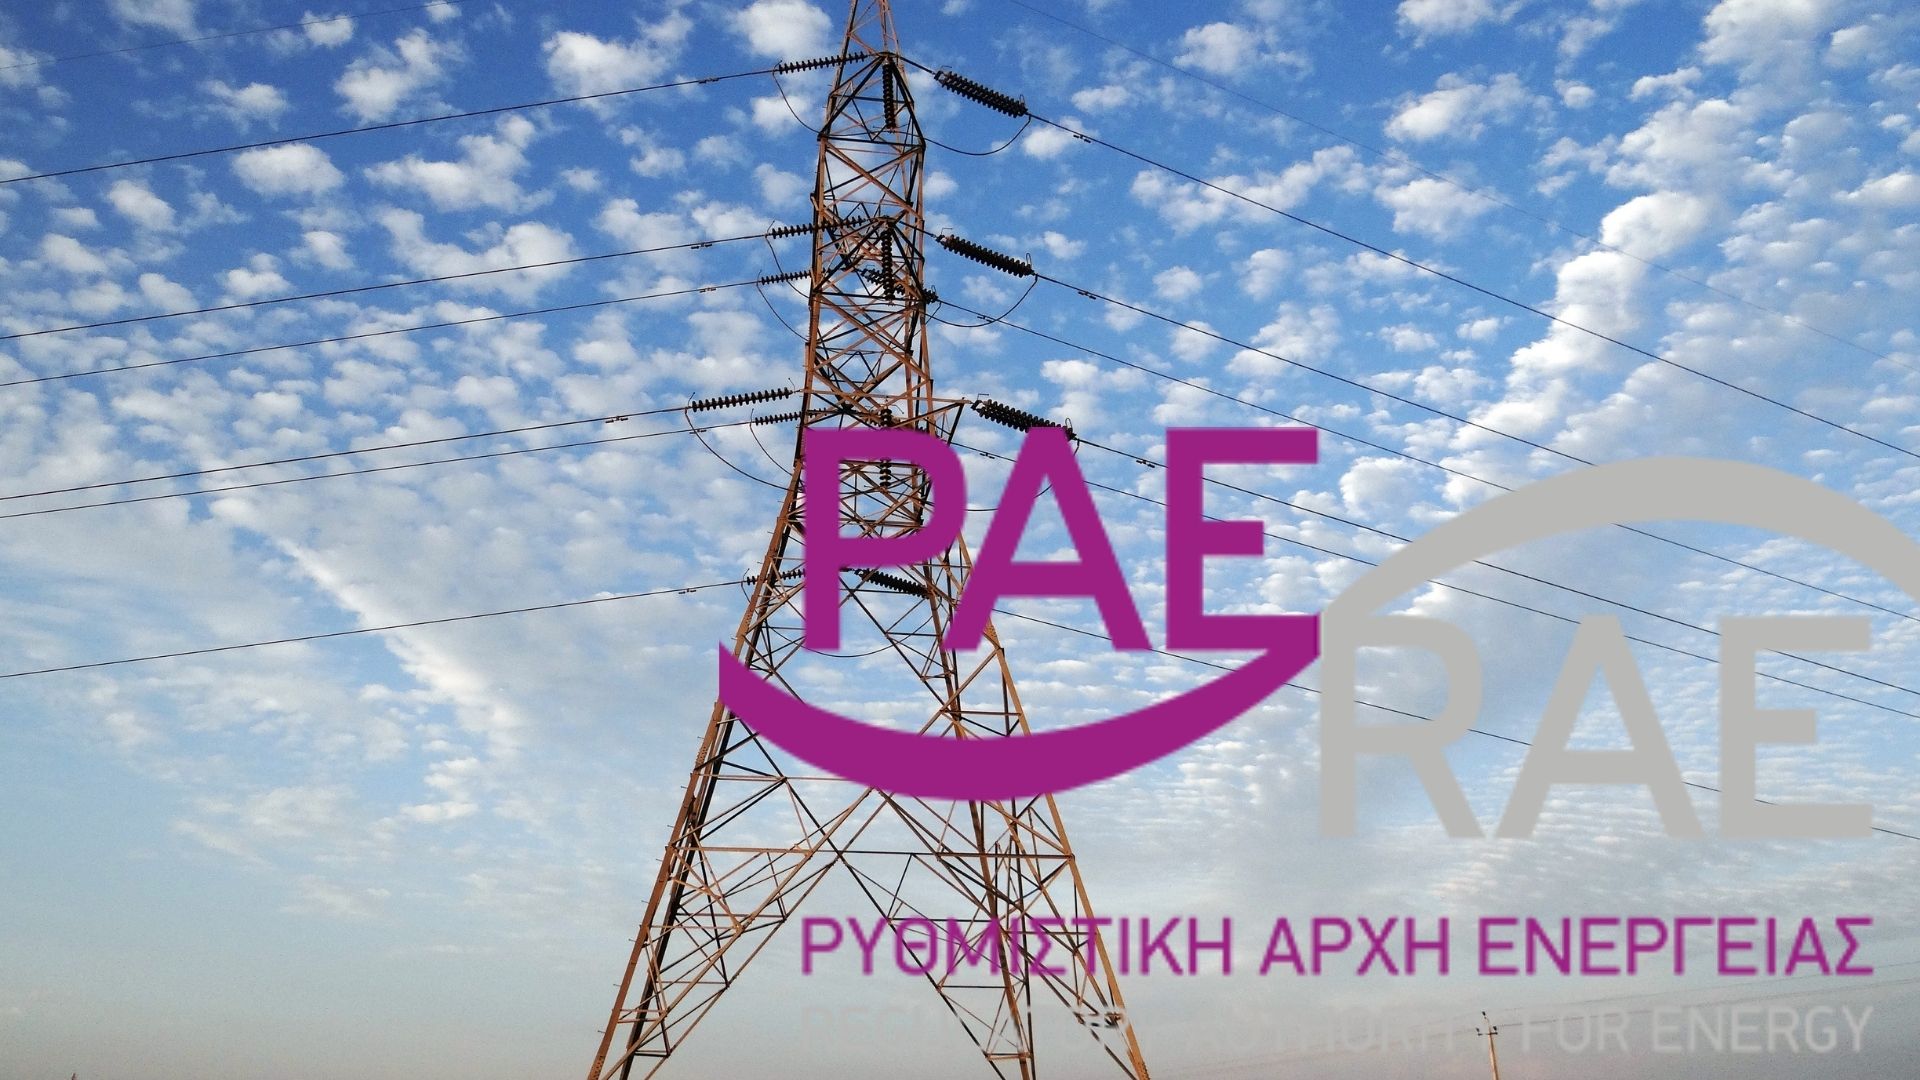 ΡΑΕ: Έχουν συμμορφωθεί οι προμηθευτές ηλεκτρικής ενέργειας για τις διαφημίσεις των νέων τιμολογίων - Νέα προειδοποίηση έως 20 Αυγούστου